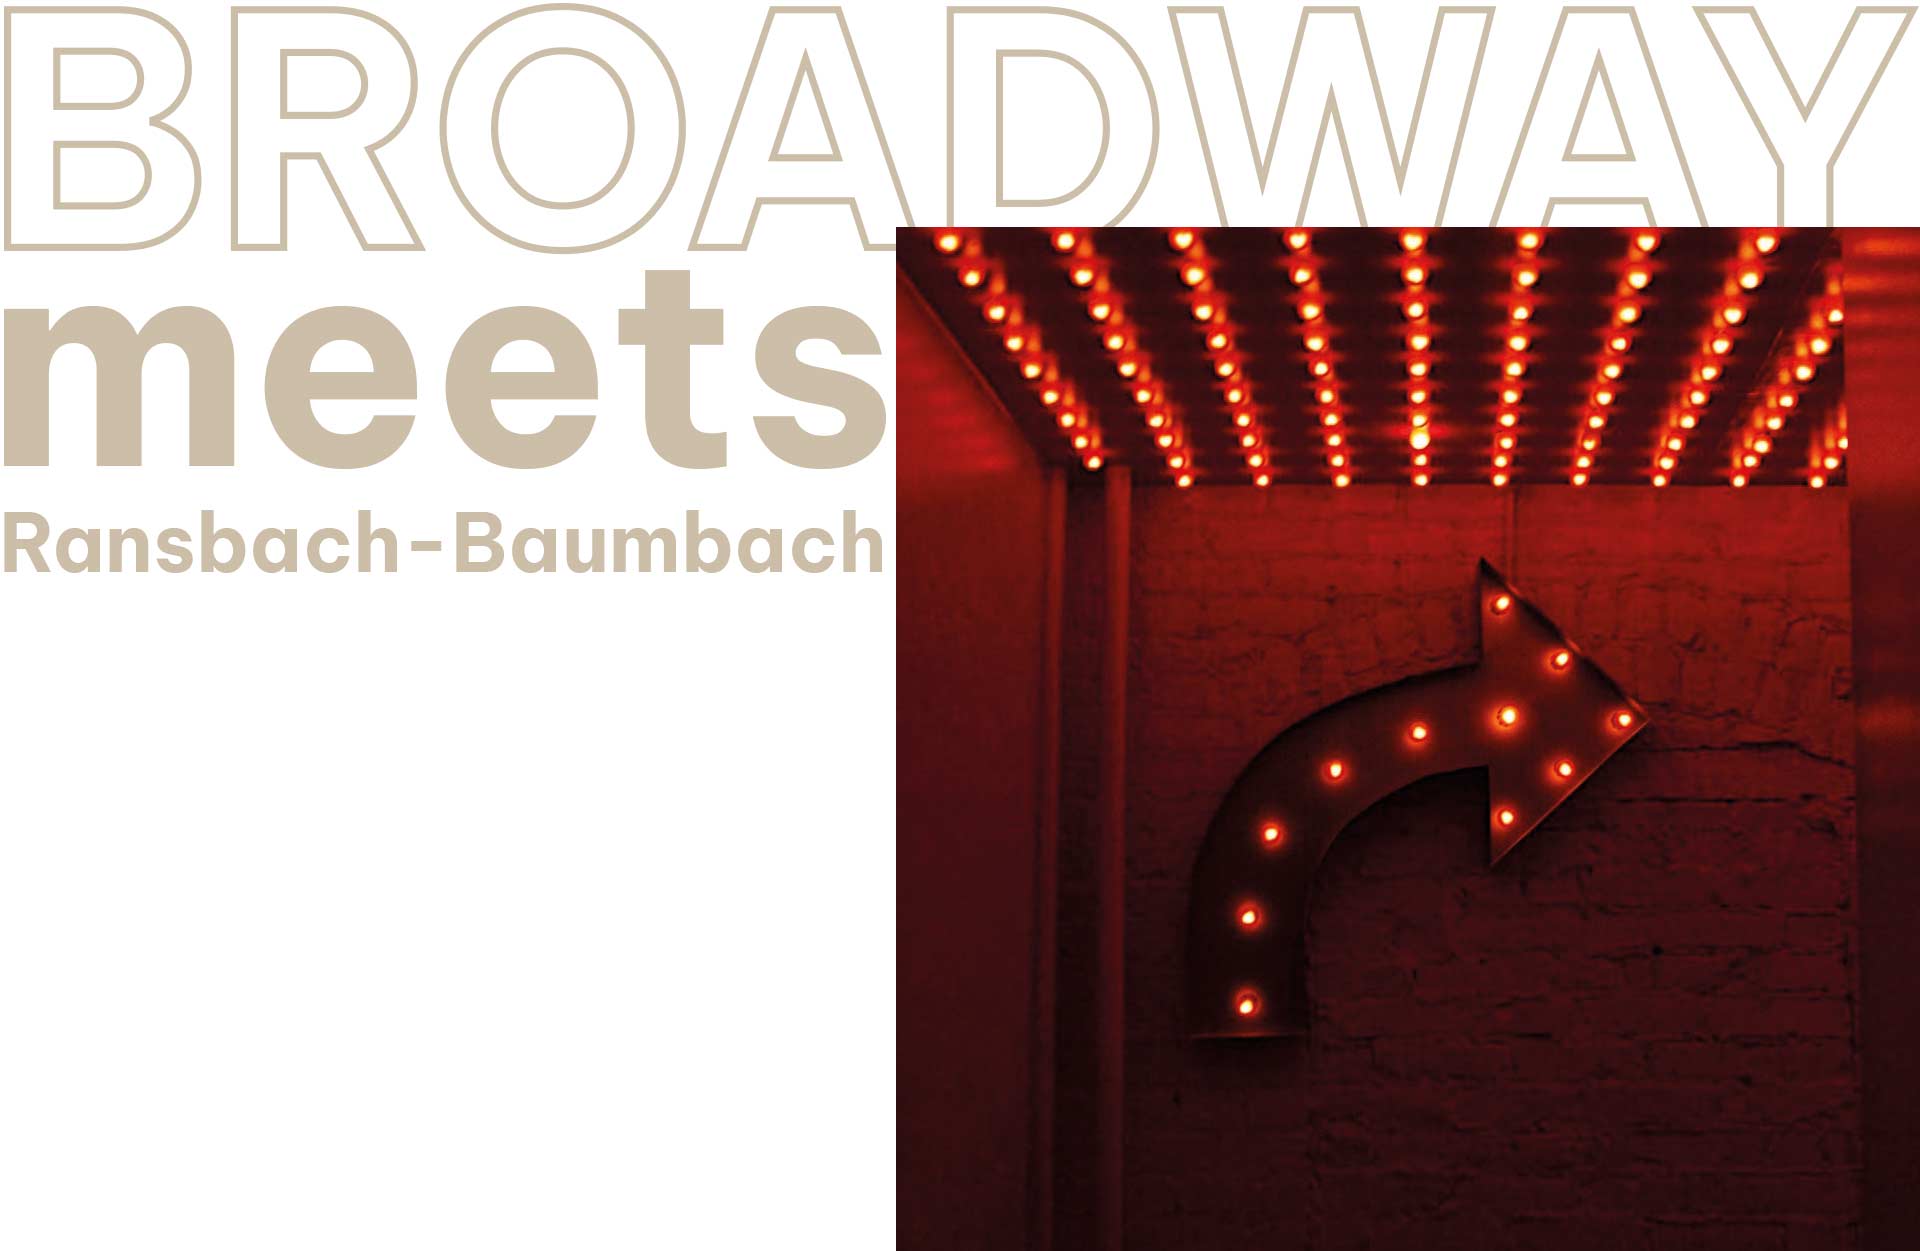 Broadway-meets-Ransbach-Baumbach-Konzert